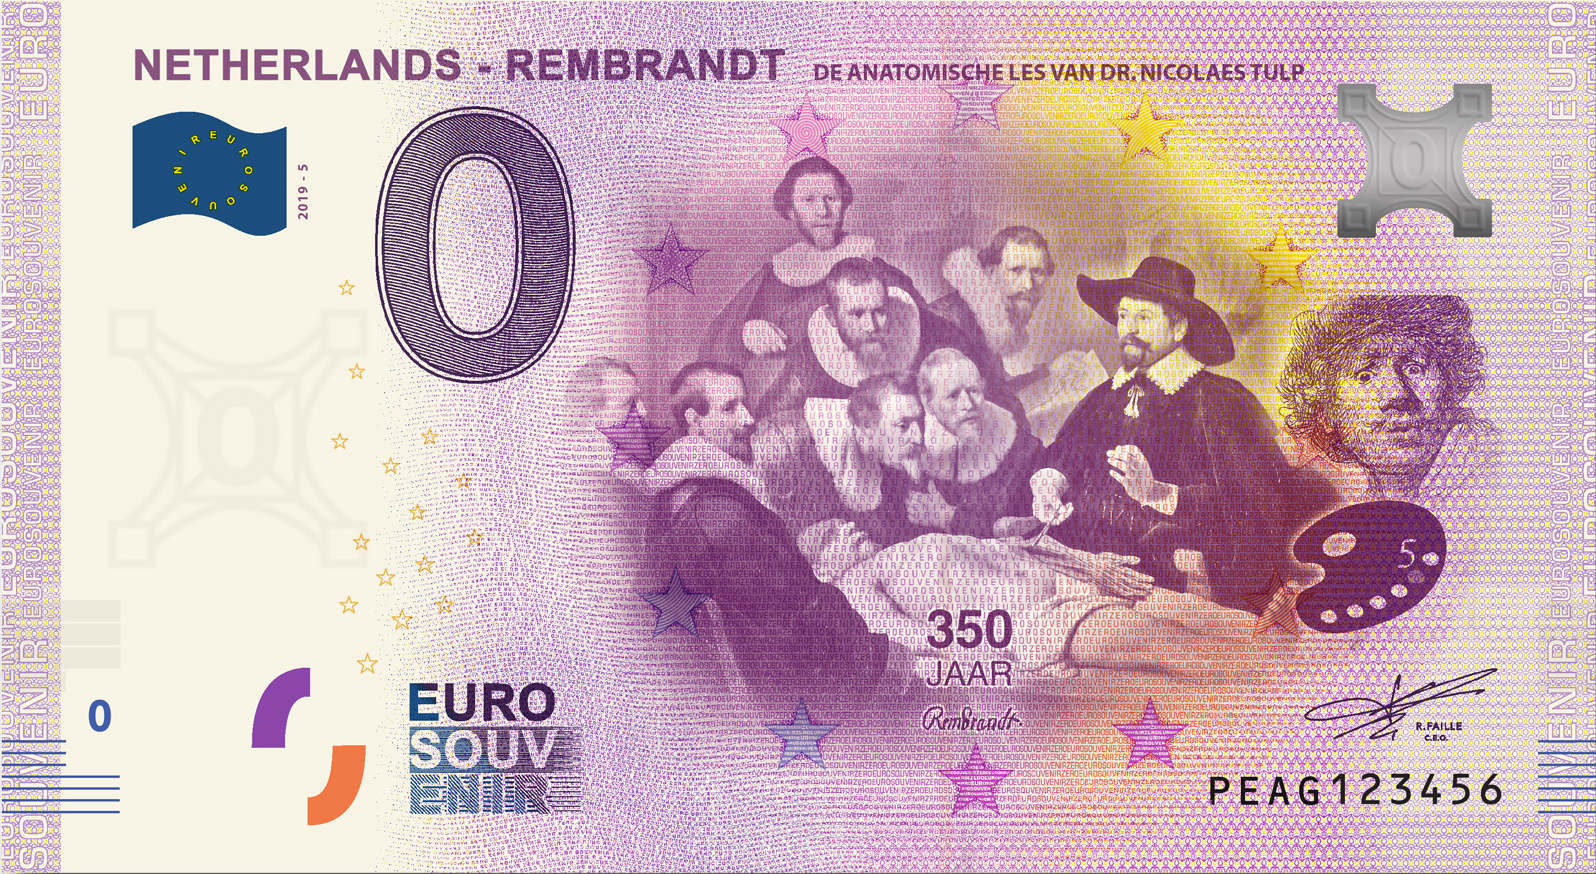 0 Euro souvenir note Nederland 2019 - Rembrandt De anatomische les